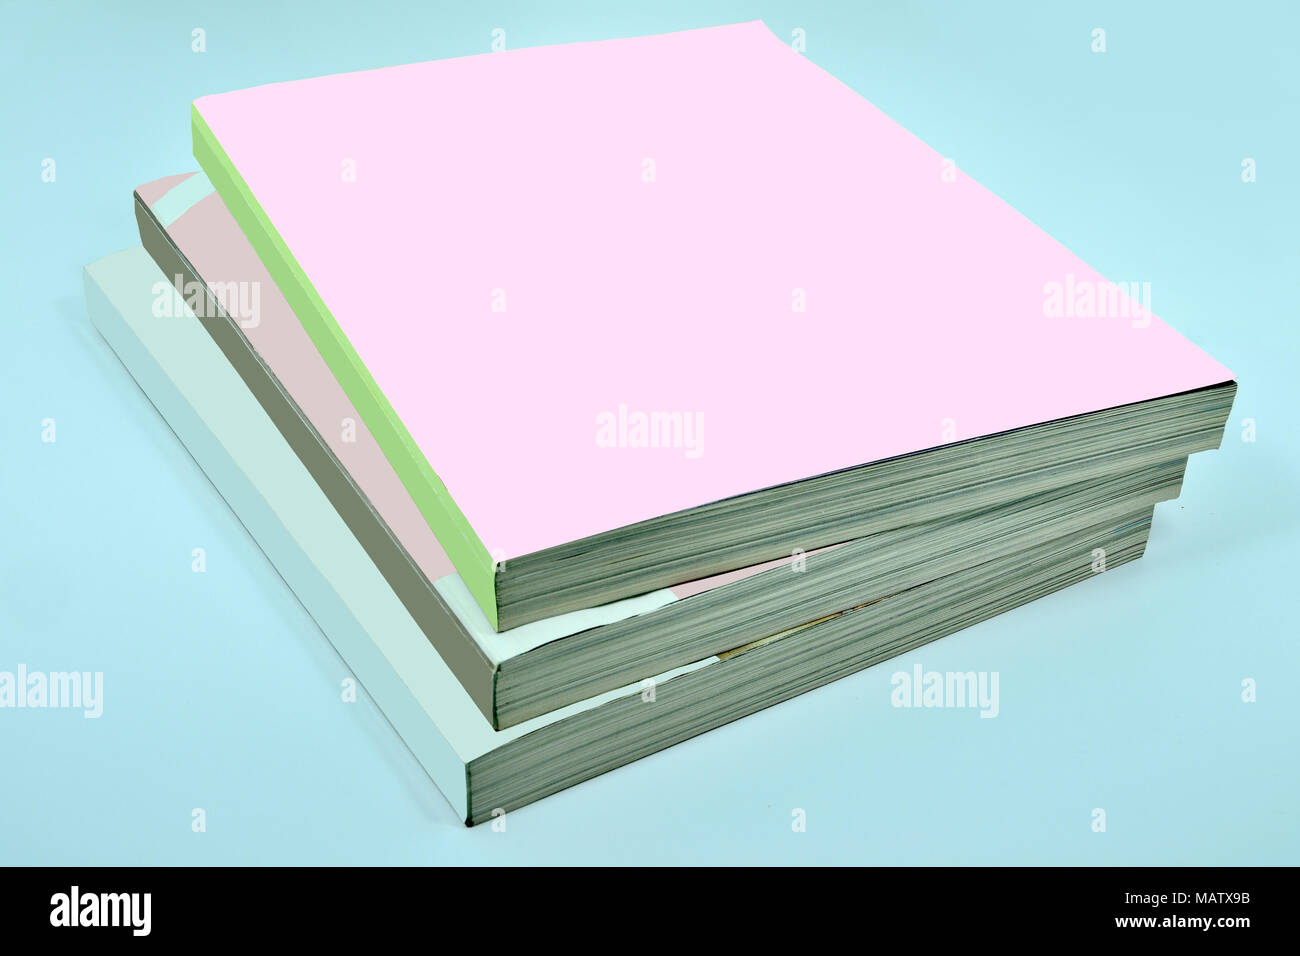 Stapel von drei dicke Zeitschriften oder Bücher, Kataloge mit einem leeren Pink soft cover auf einem blauen Hintergrund - ein mock up für das Demonstrieren Sie Ihr Design Stockfoto